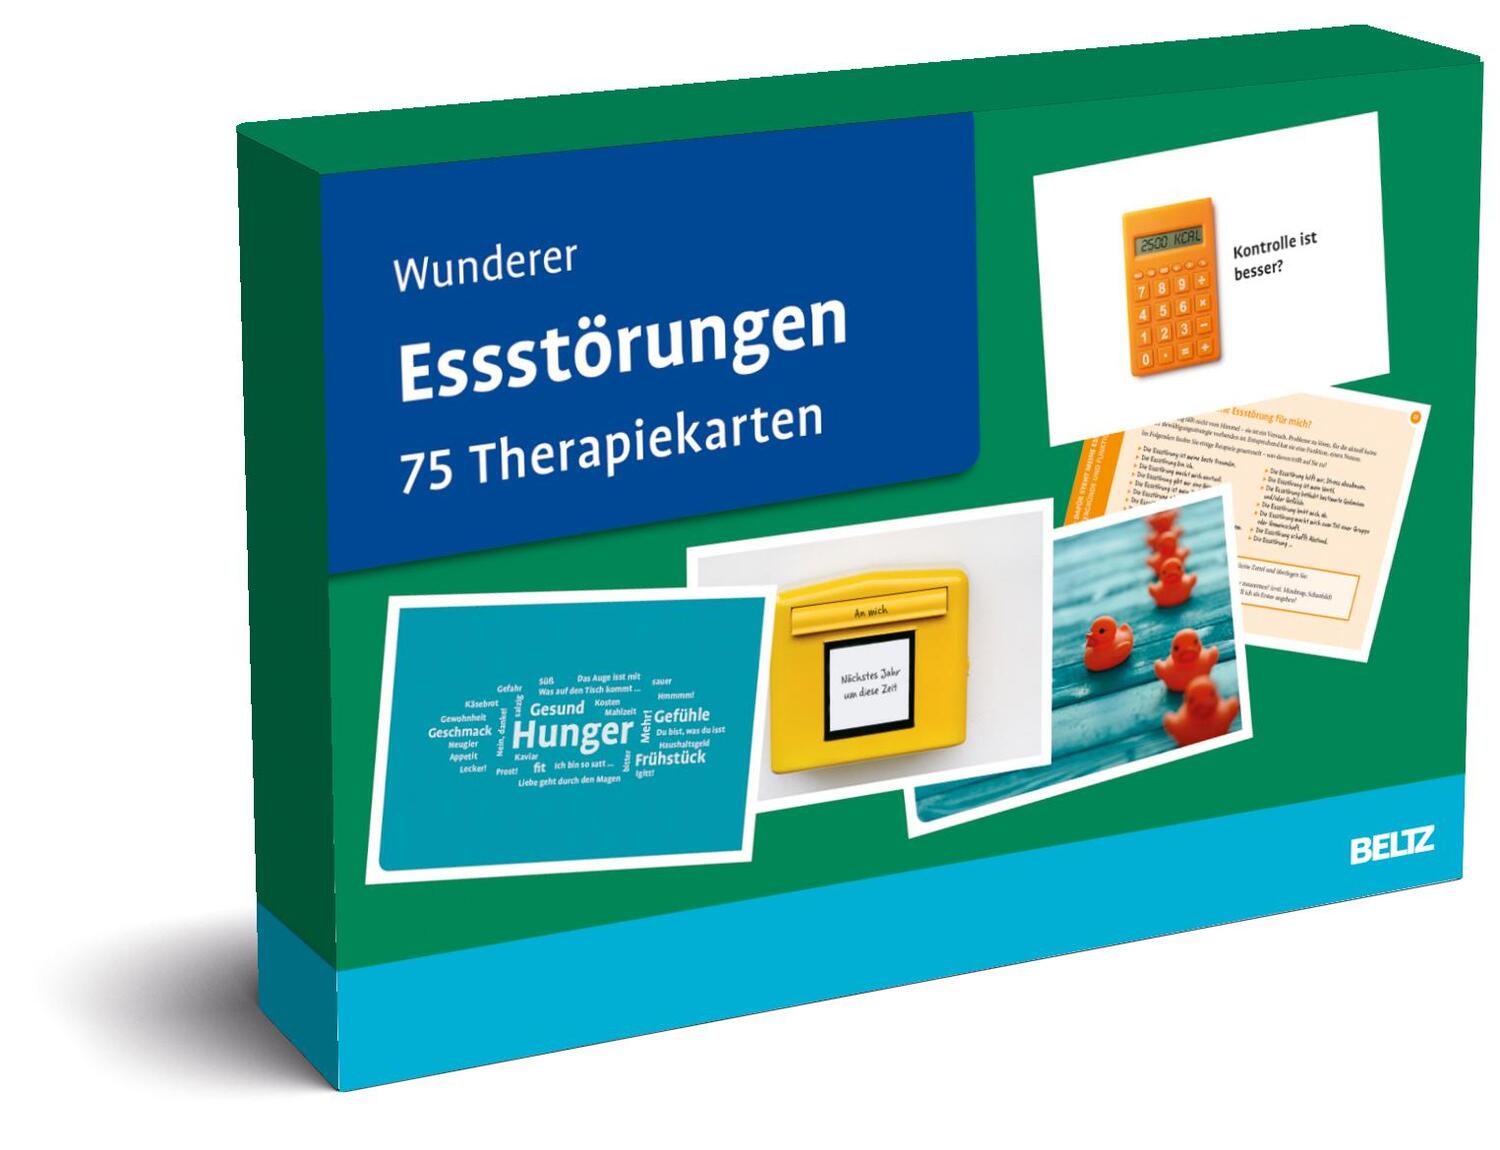 Cover: 4019172100179 | Essstörungen | Eva Wunderer | Box | BeltzTherapiekarten | Deutsch